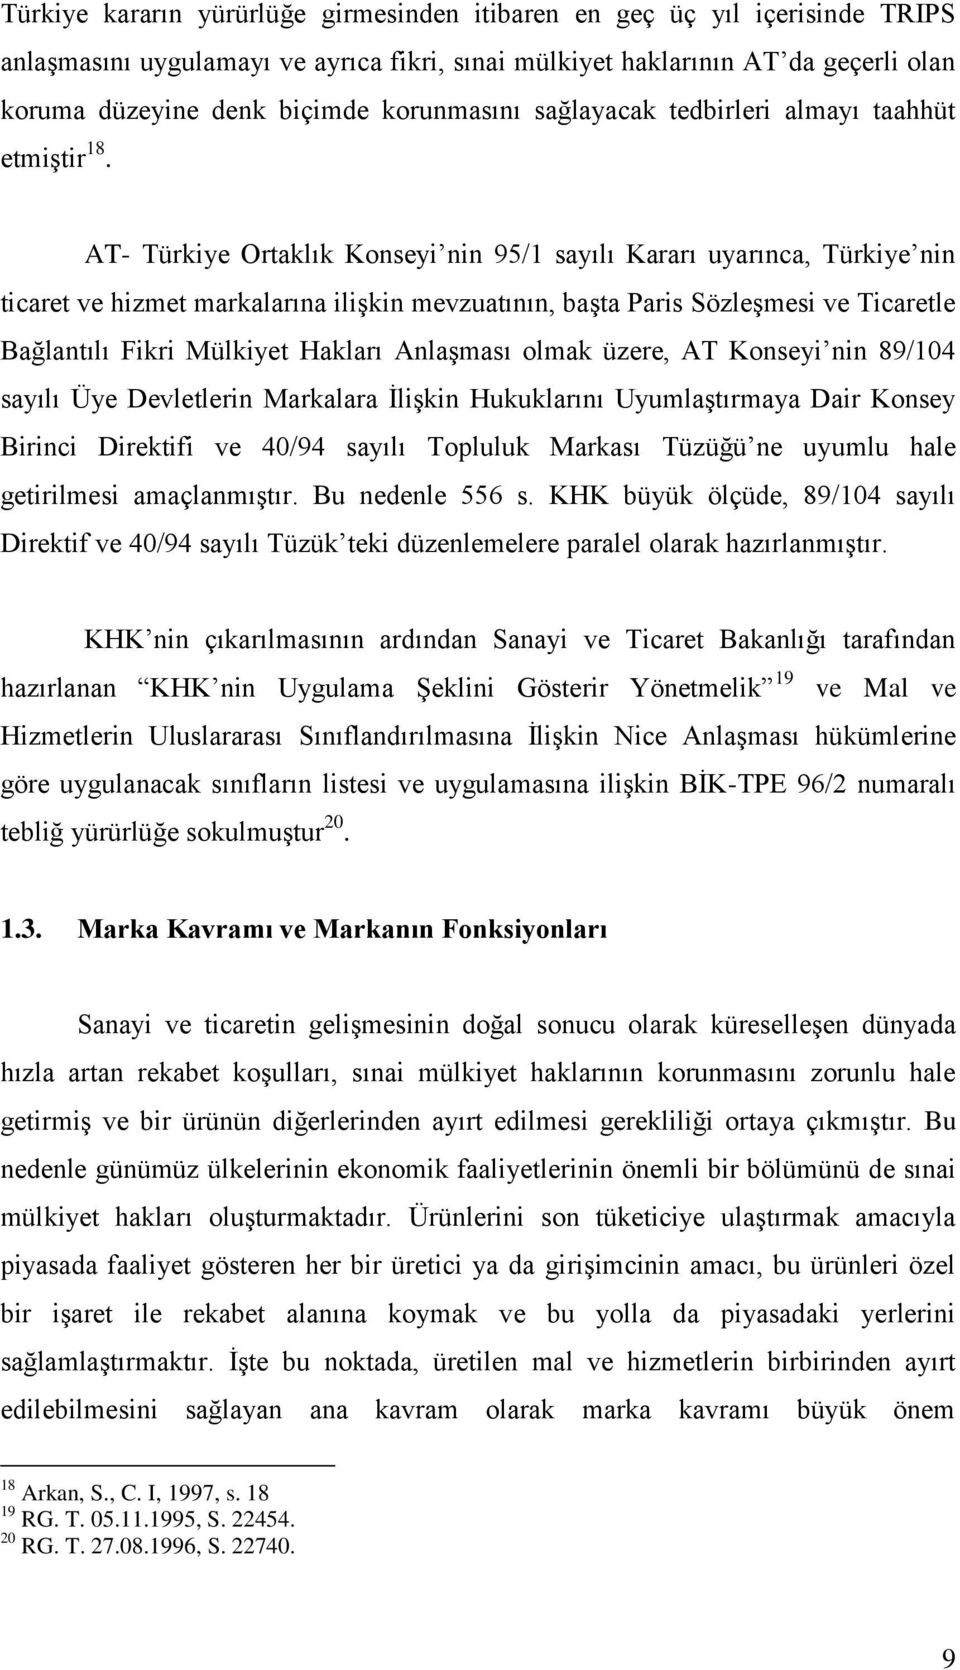 AT- Türkiye Ortaklık Konseyi nin 95/1 sayılı Kararı uyarınca, Türkiye nin ticaret ve hizmet markalarına ilişkin mevzuatının, başta Paris Sözleşmesi ve Ticaretle Bağlantılı Fikri Mülkiyet Hakları